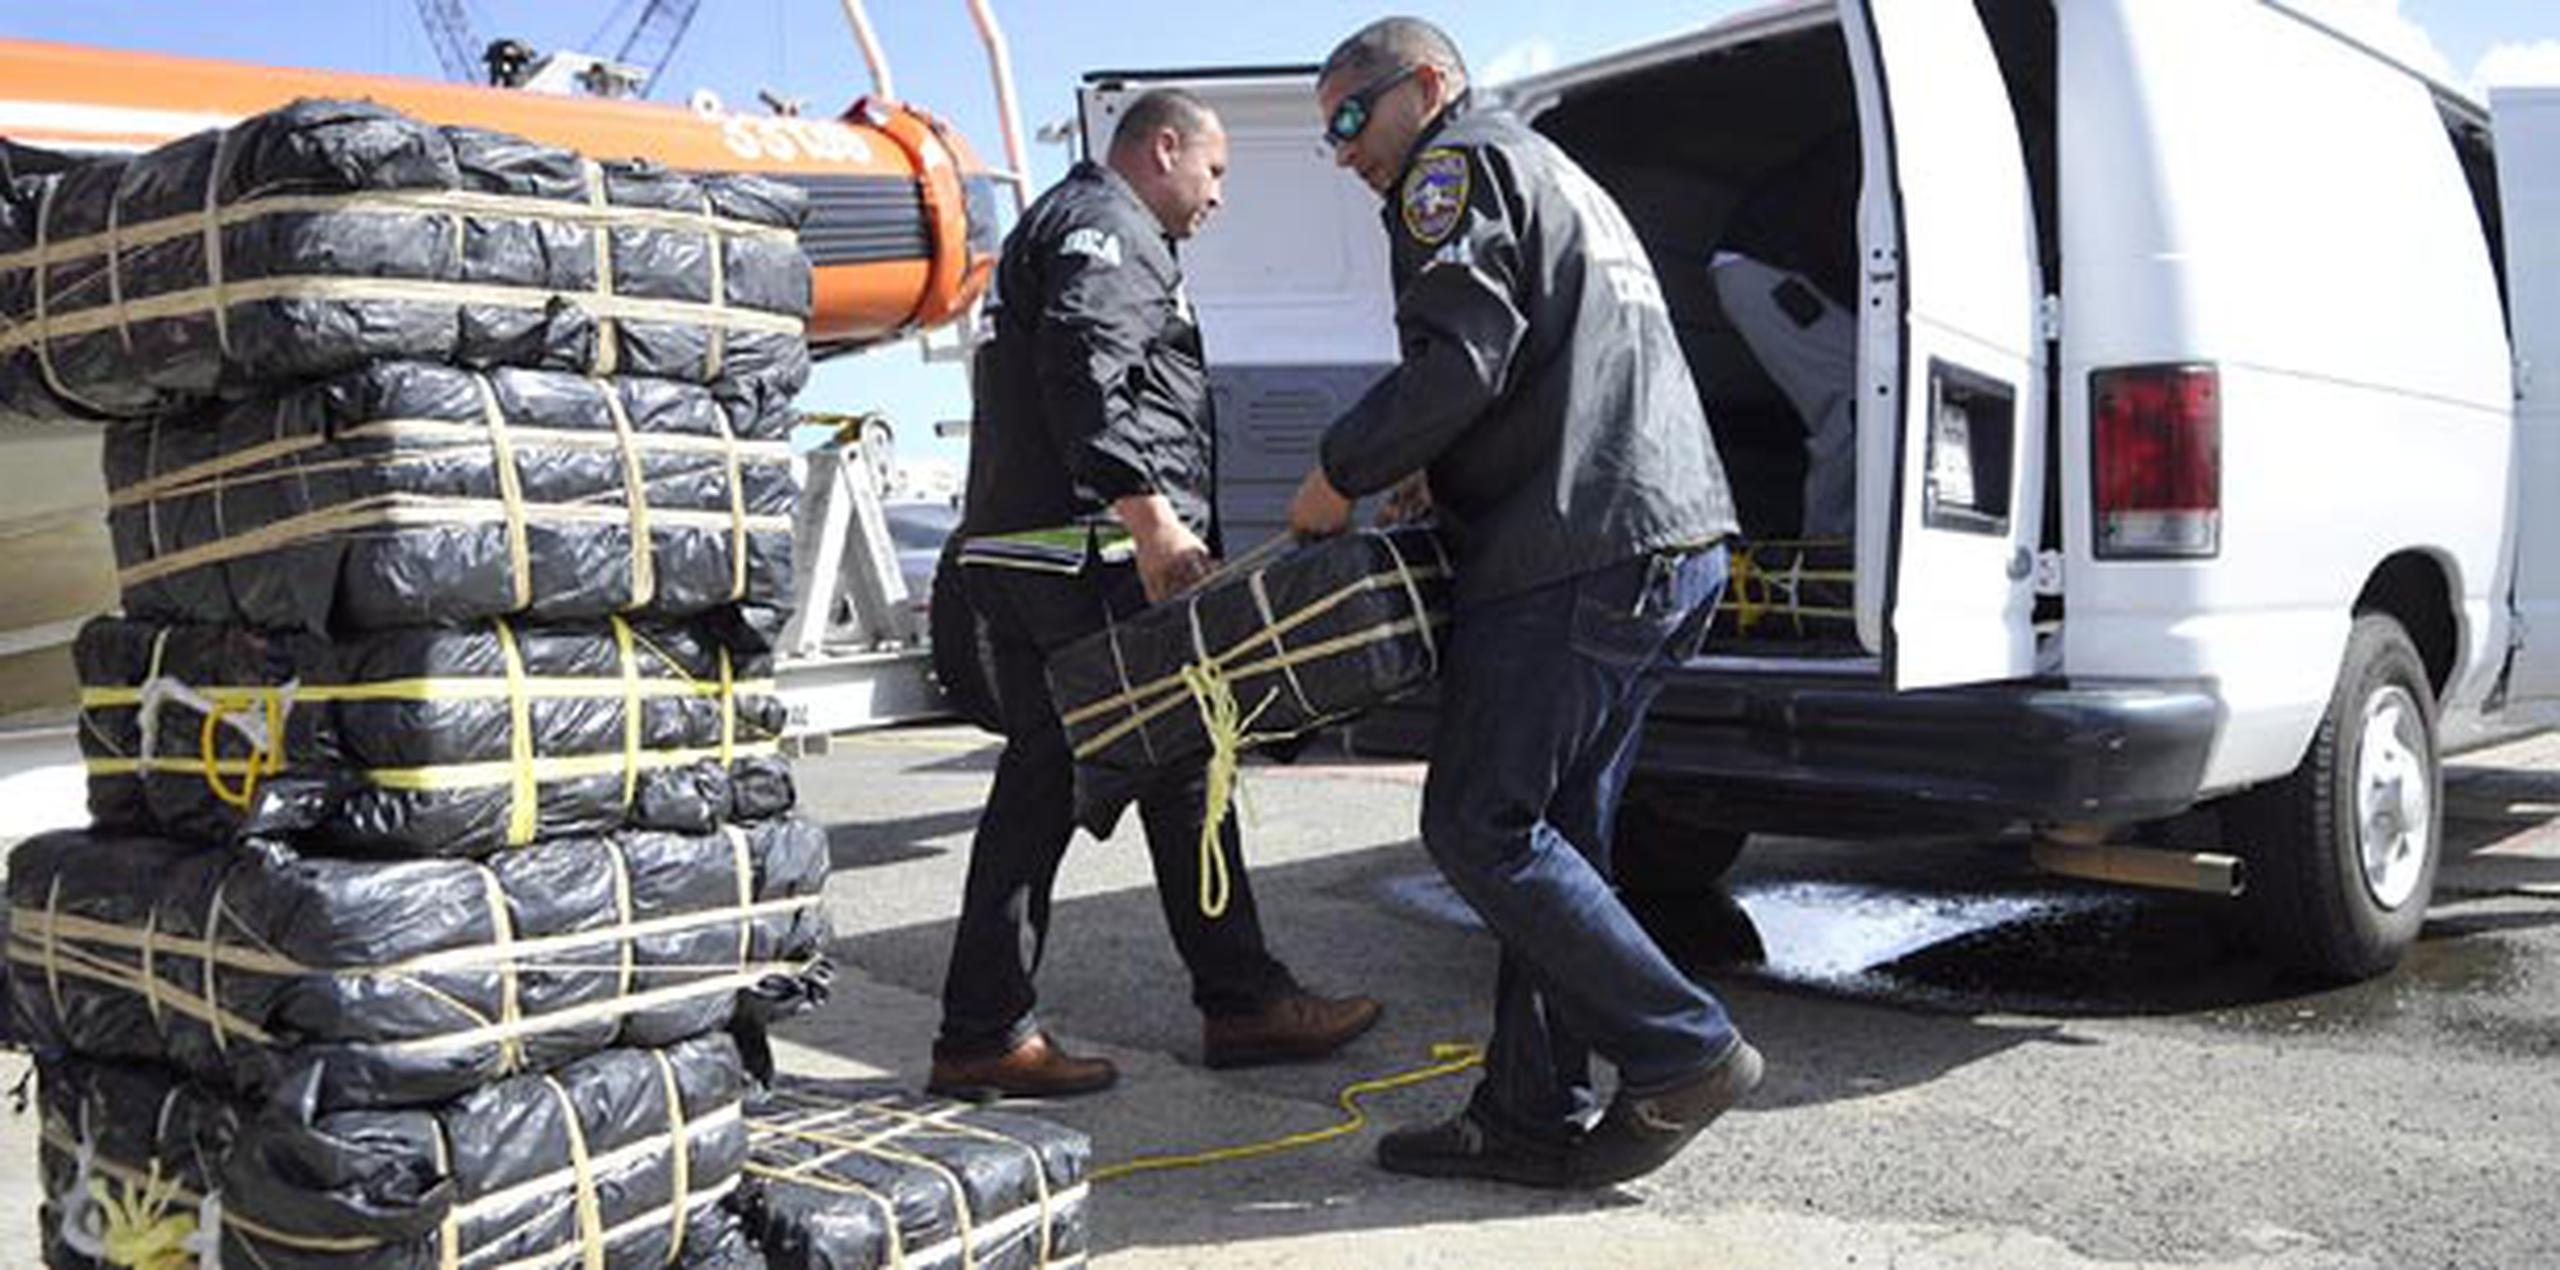 Las 2,546 libras de cocaína fueron incautadas en una embarcación cerca de las costas de Santa Cruz. (ana.abruña@gfrmedia.com)